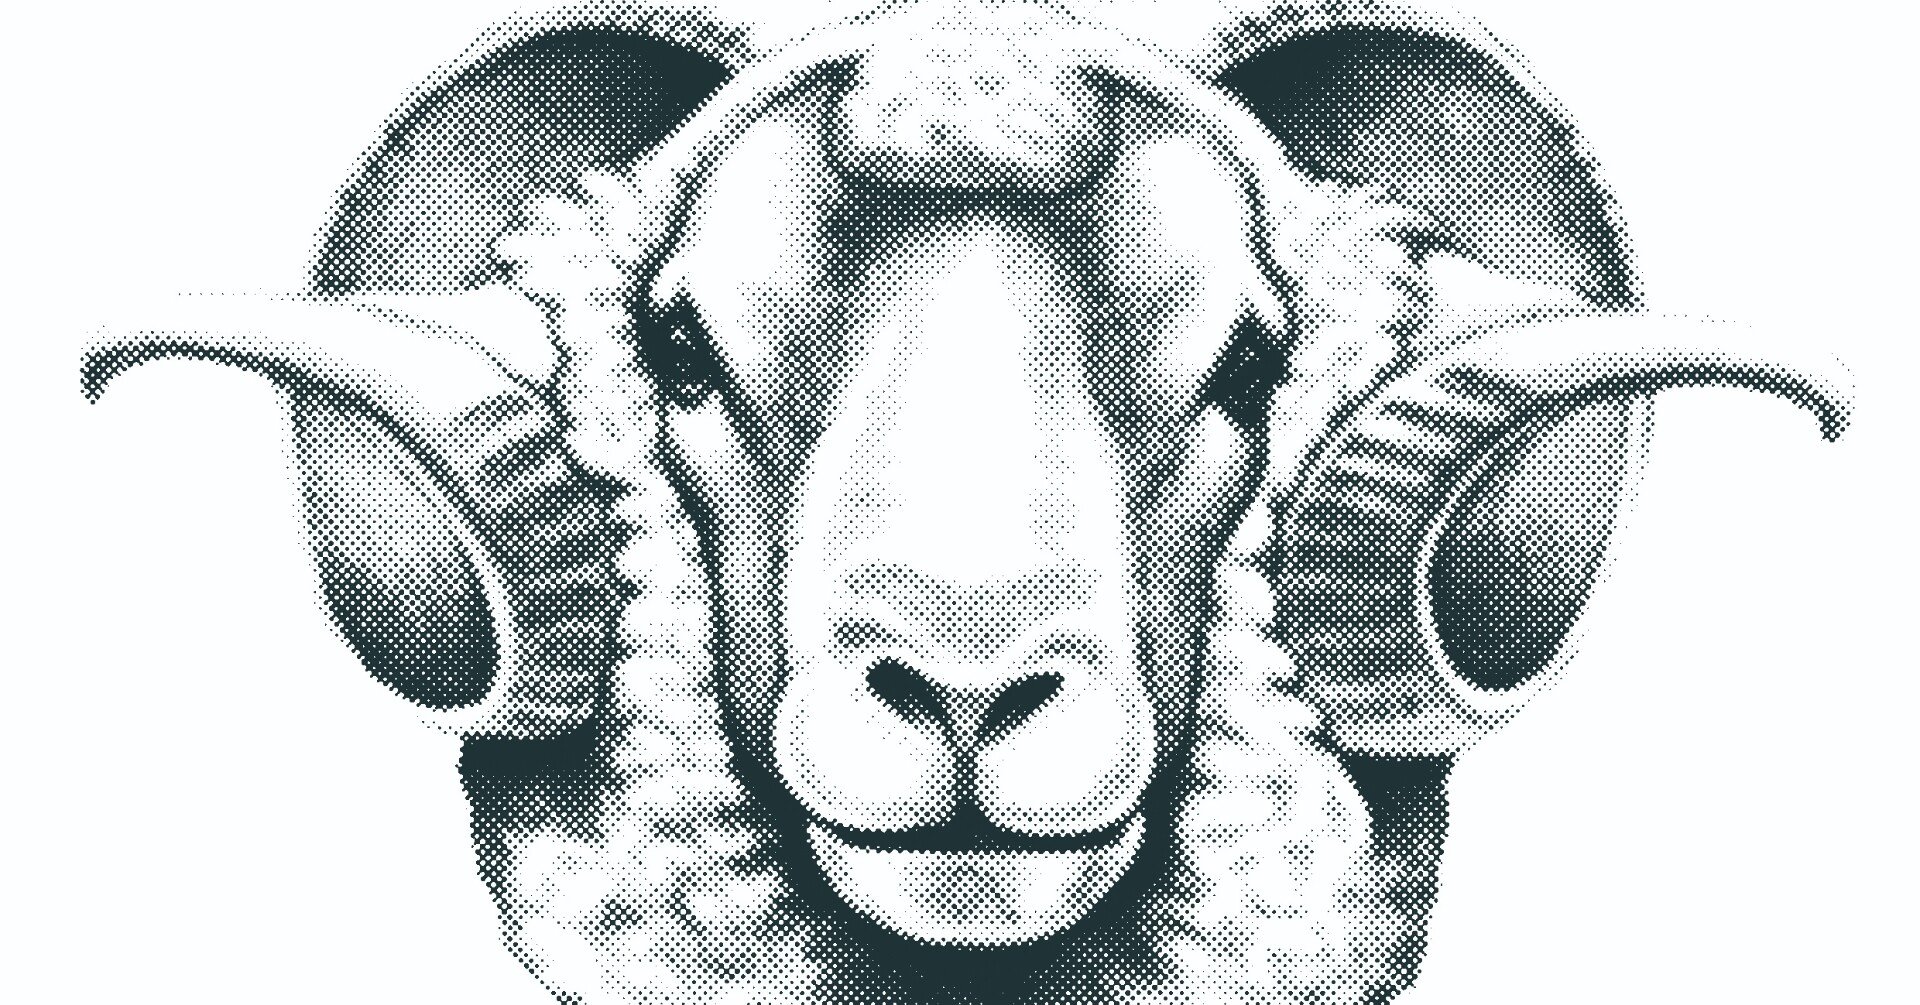 画像 羊 イラスト リアル 21年に人気の壁紙画像